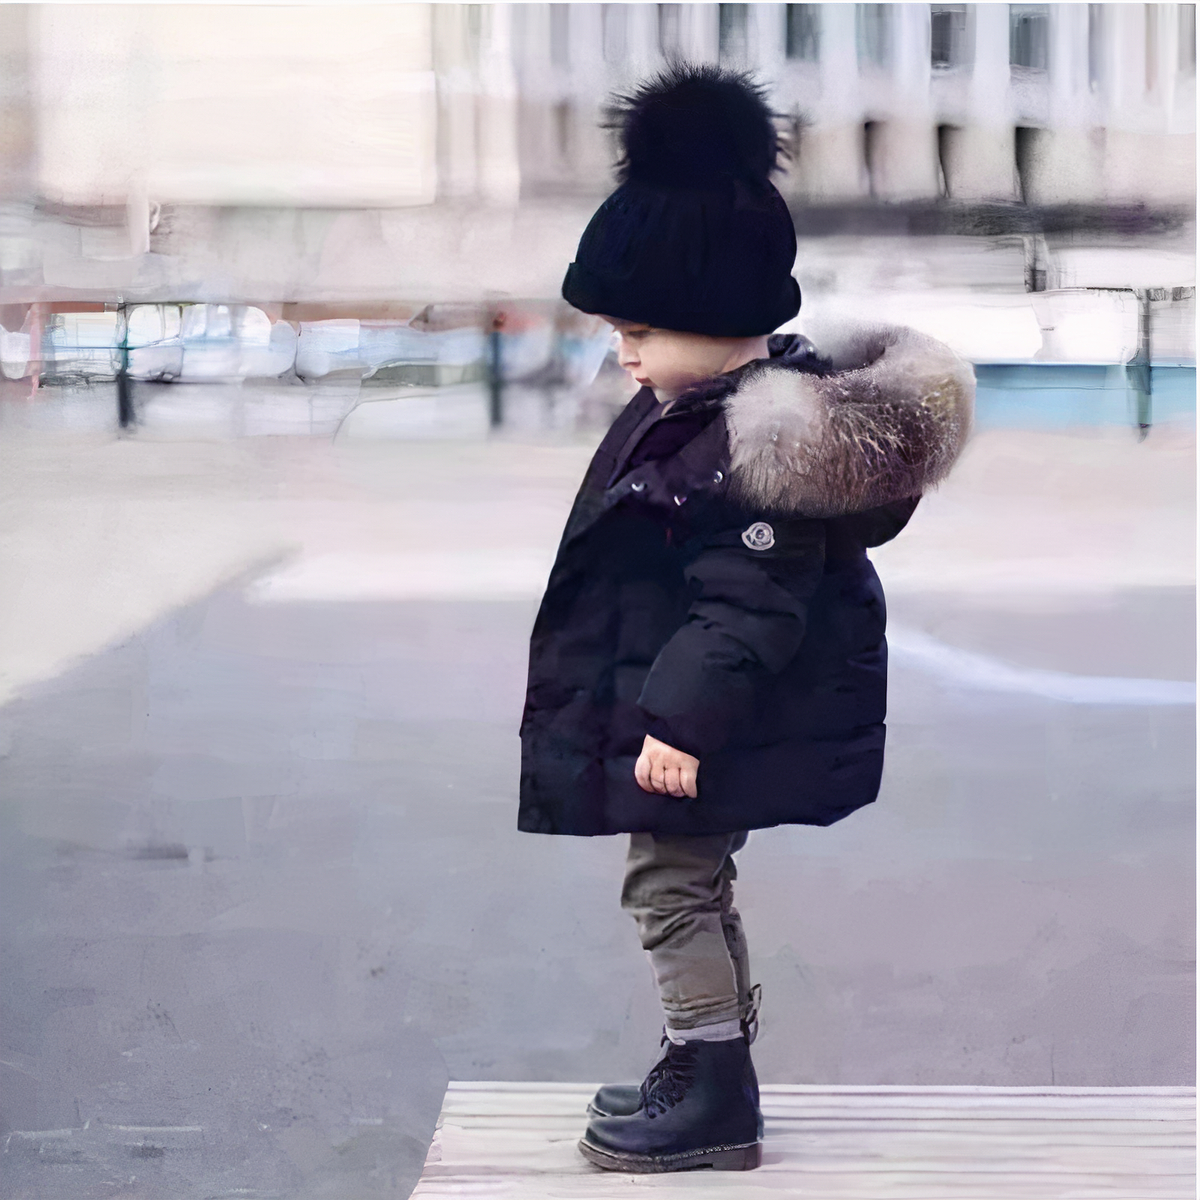 Enfant dehors portant une doudoune noire pour enfants.